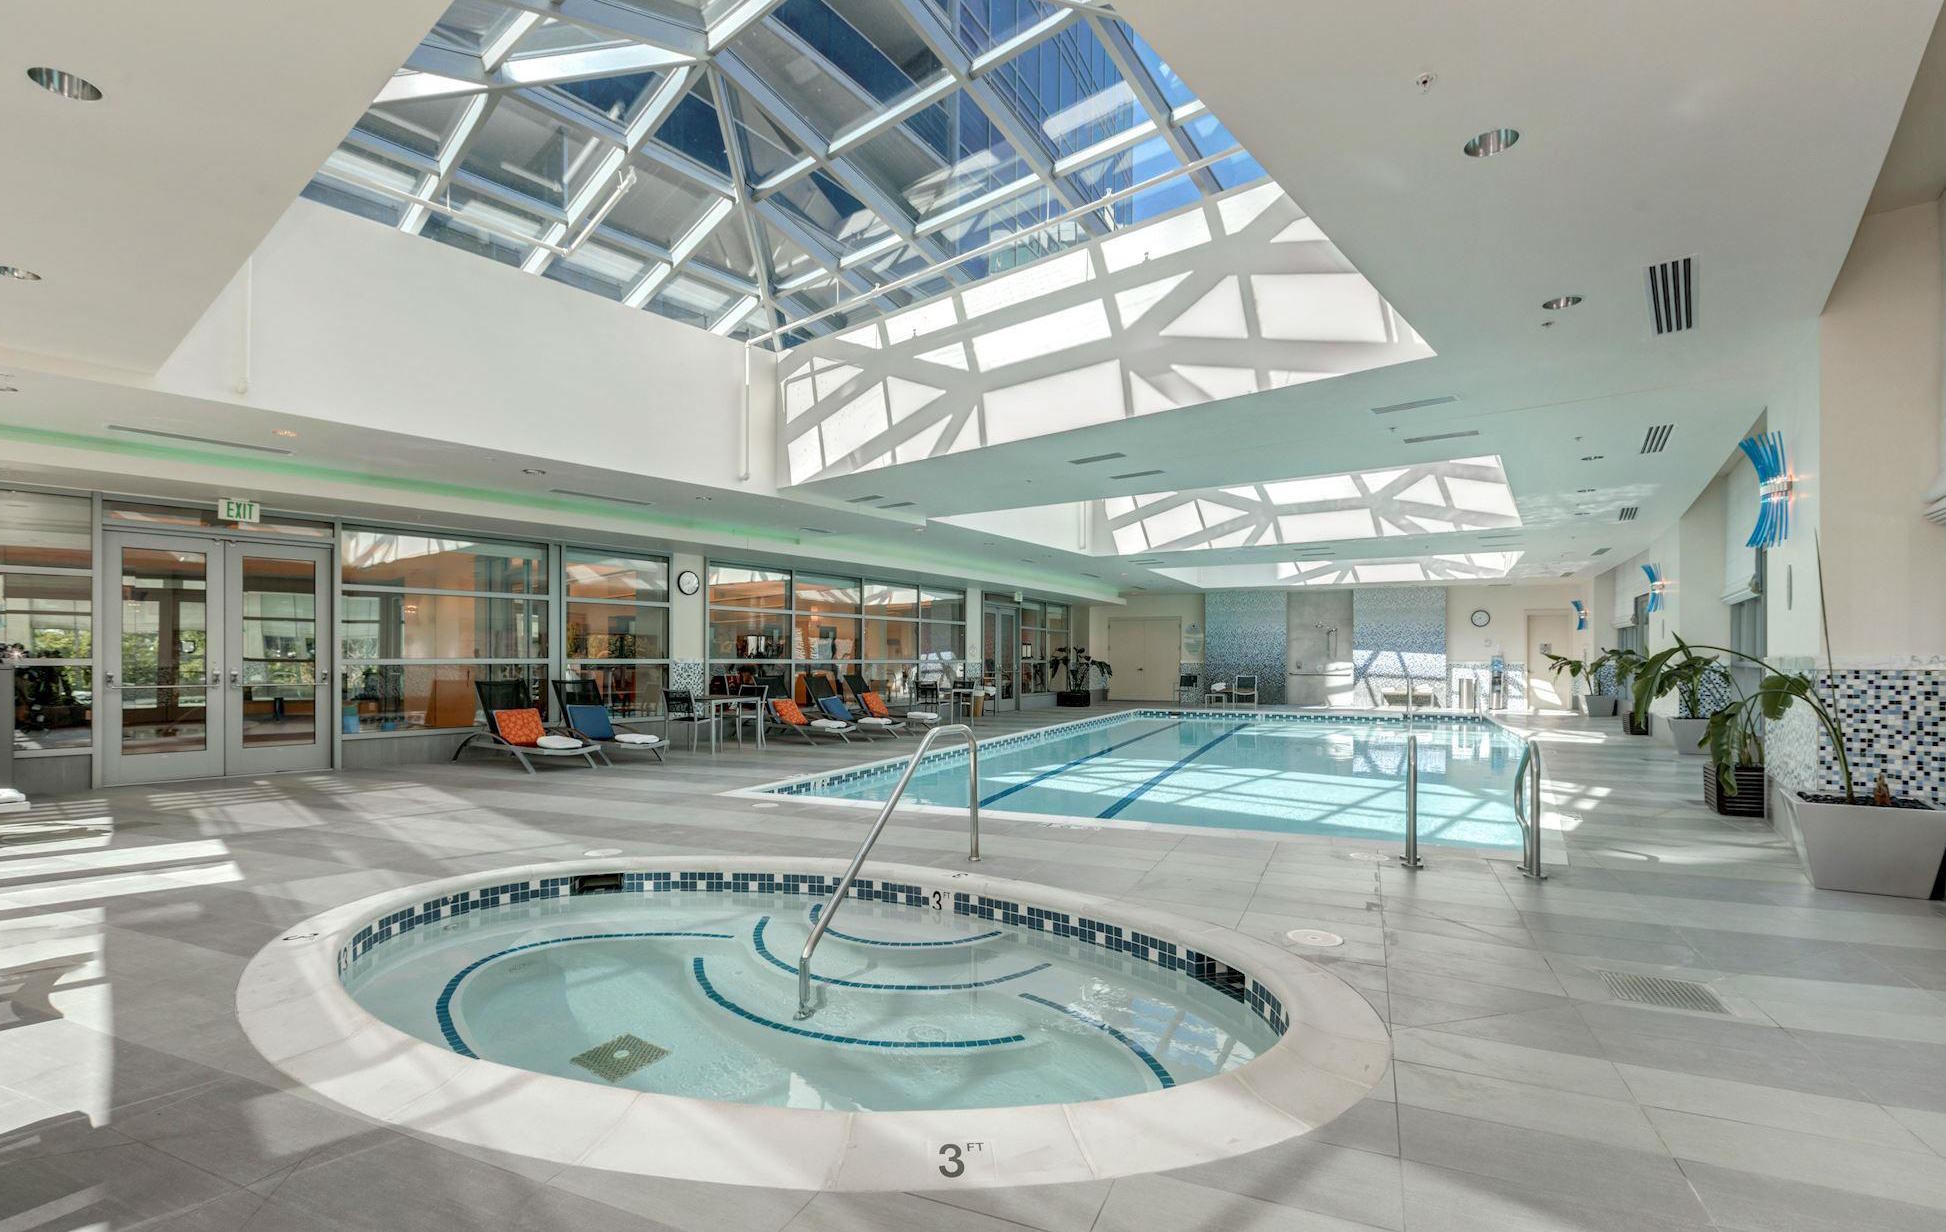 Condos With A Pool   Arlington VA's 20 condo site